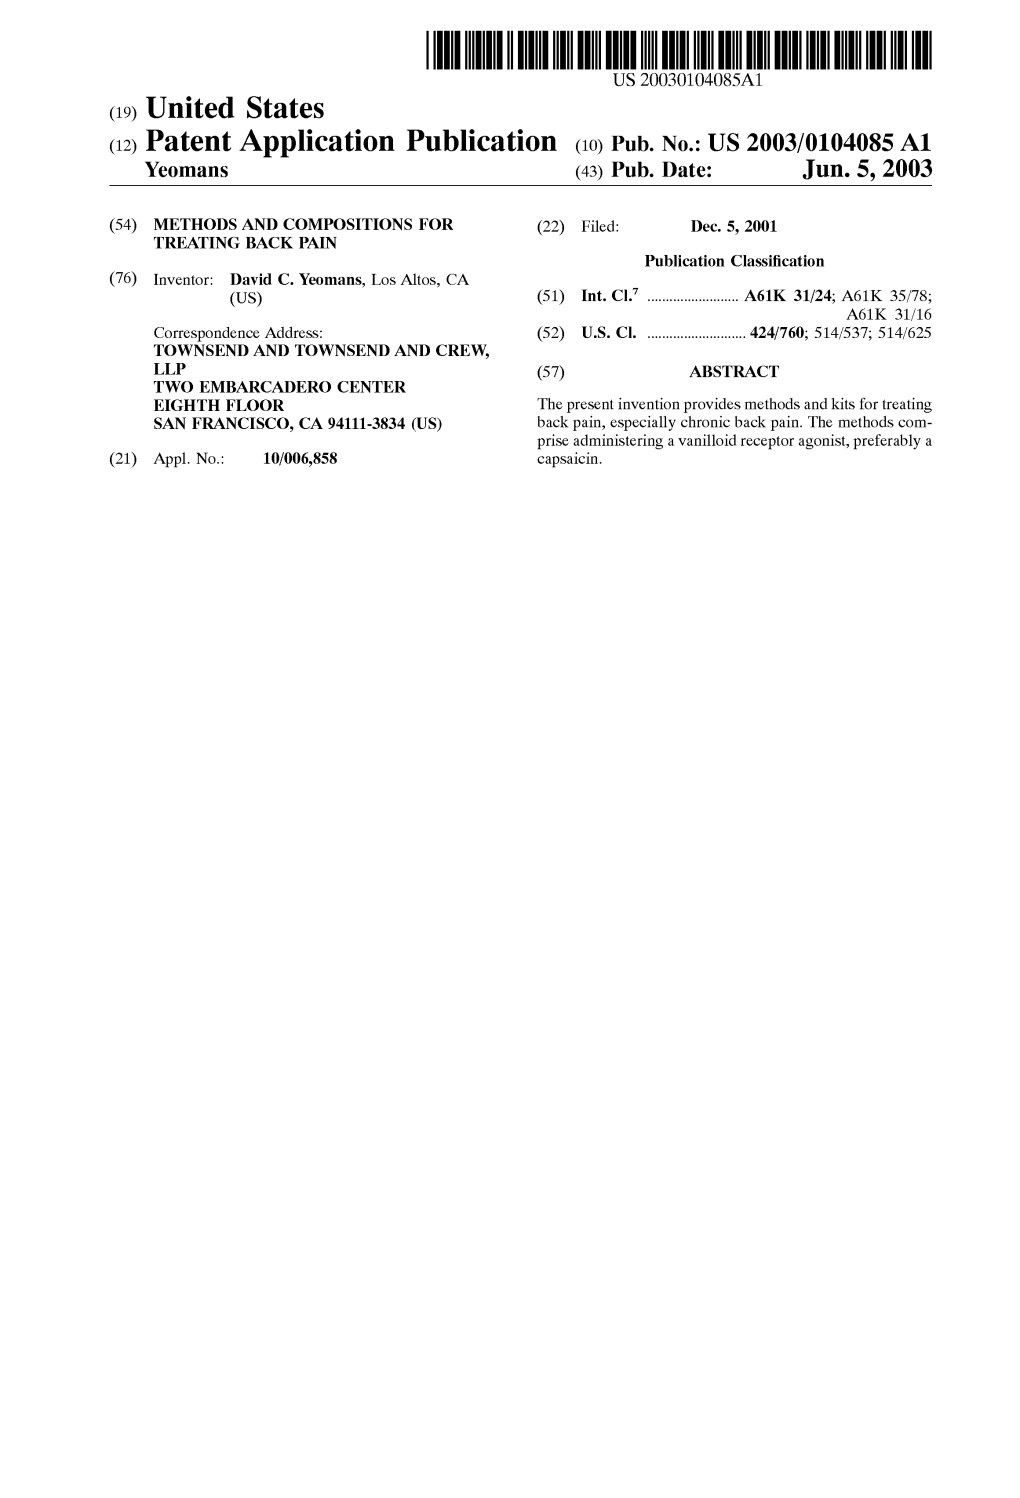 (12) Patent Application Publication (10) Pub. No.: US 2003/0104085A1 Yeomans (43) Pub